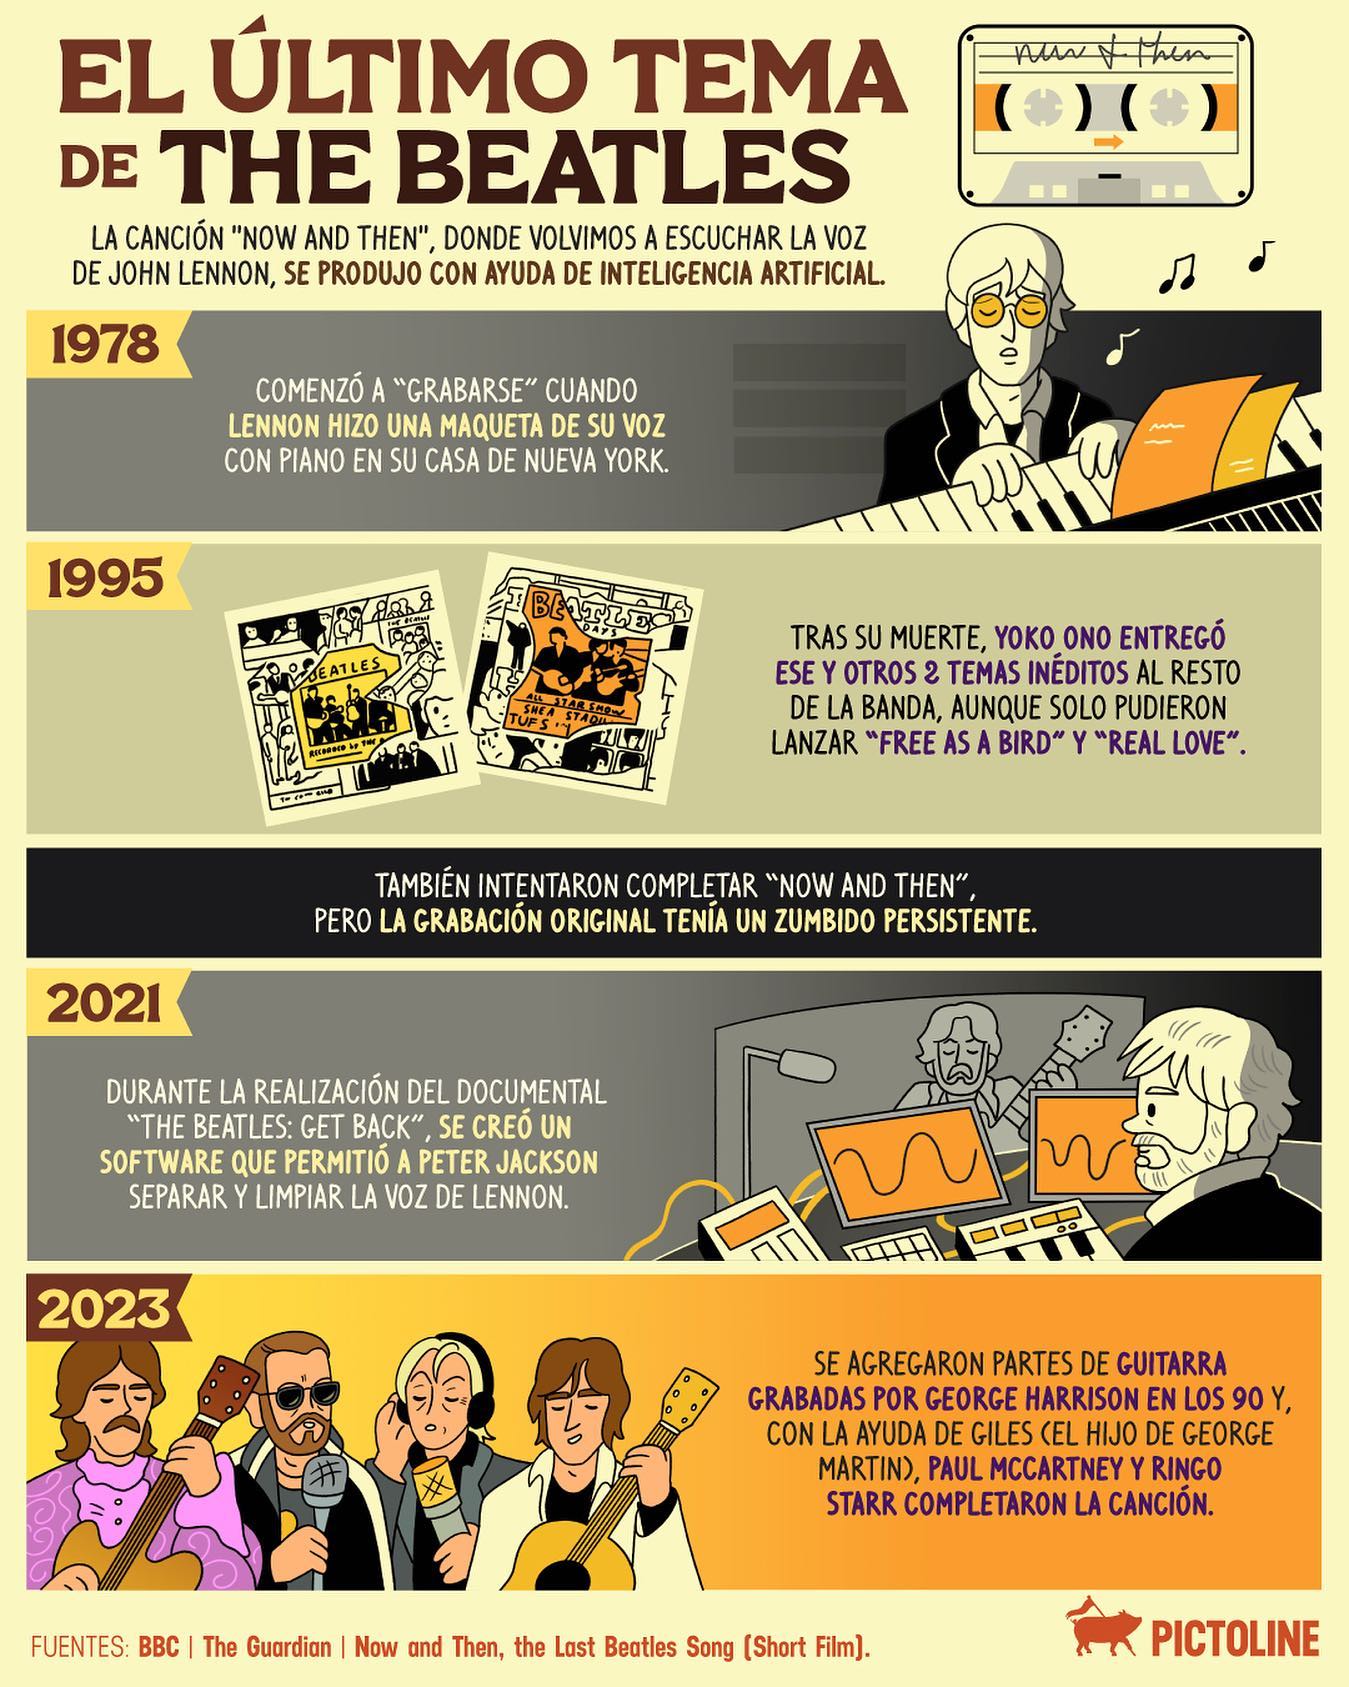 Una tecnología que no existía en su tiempo hizo posible que hoy podamos escuchar la última canción de The Beatles 🎶🥹 #TheBeatles #NowAndThen #InteligenciaArtificial